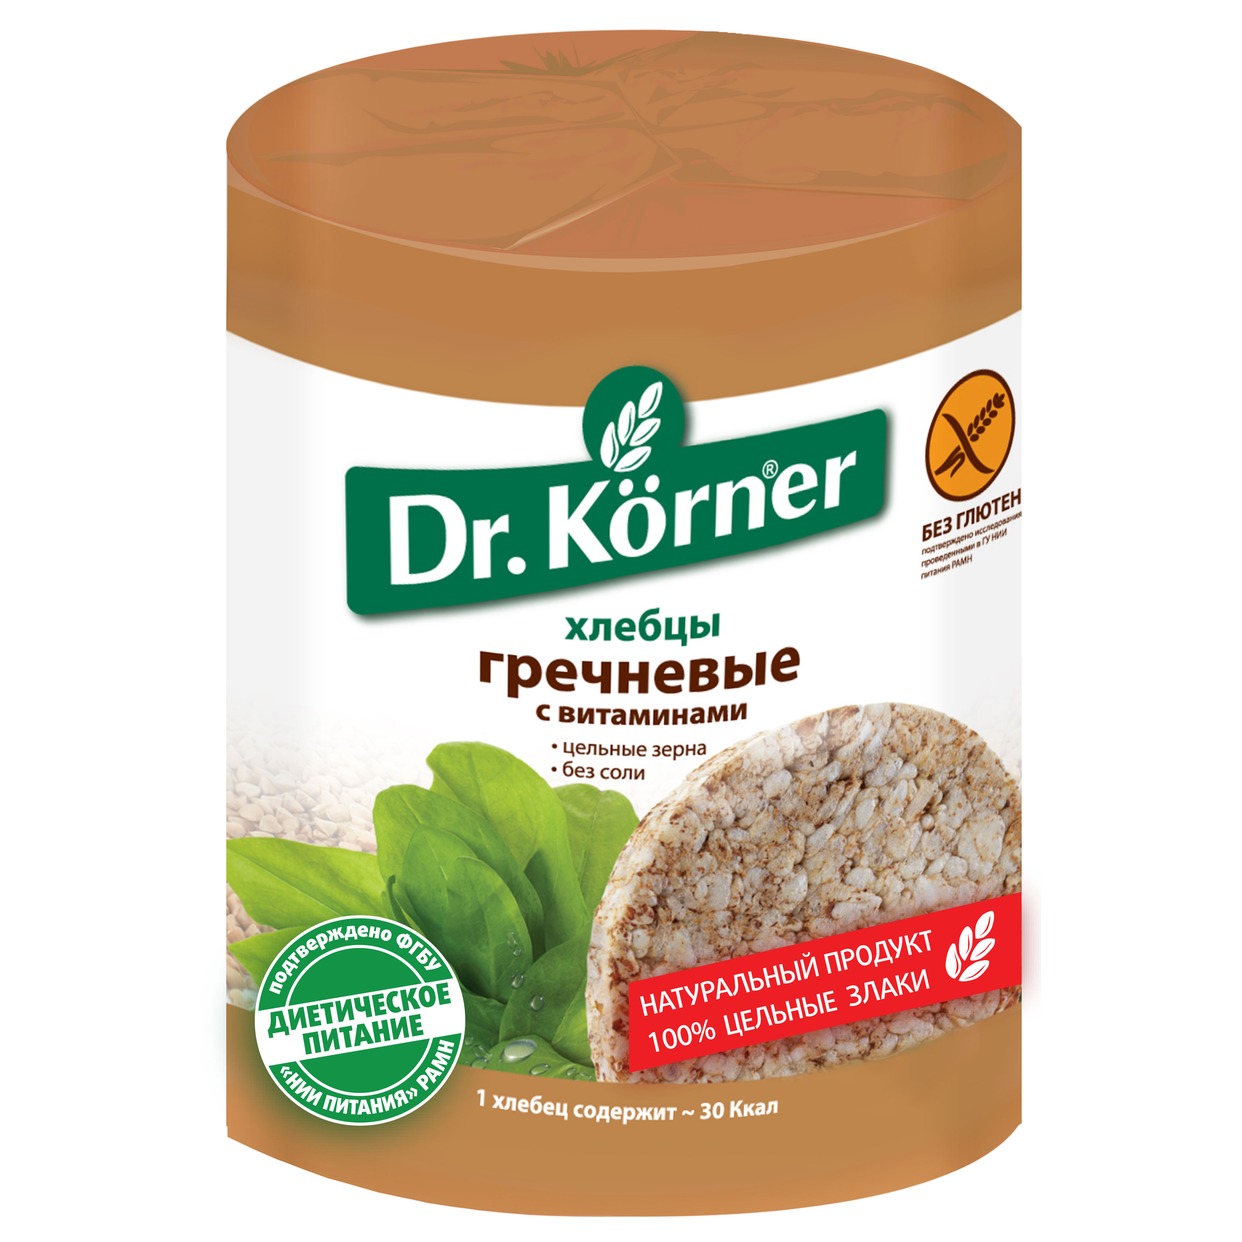 Хлебцы Гречневые, с витаминами, Dr.Korner, 100 г по акции в Пятерочке